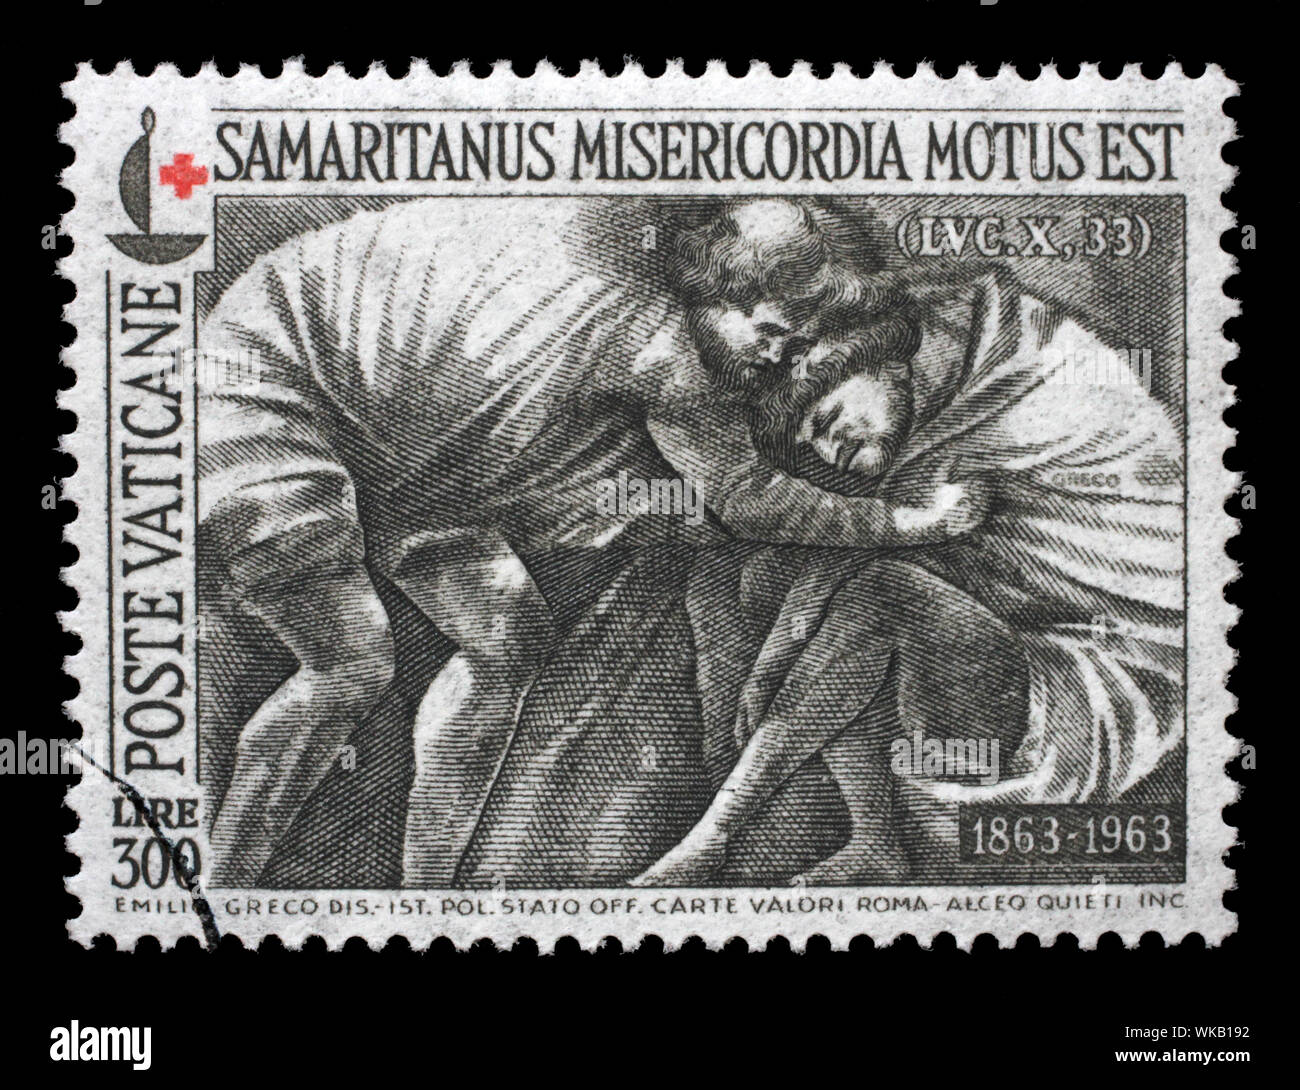 Stempel gedruckt in Vatikan zeigt "Der Barmherzige Samariter" durch Sizilianische Bildhauers Emilio Greco, Rotes Kreuz, circa 1964. Stockfoto